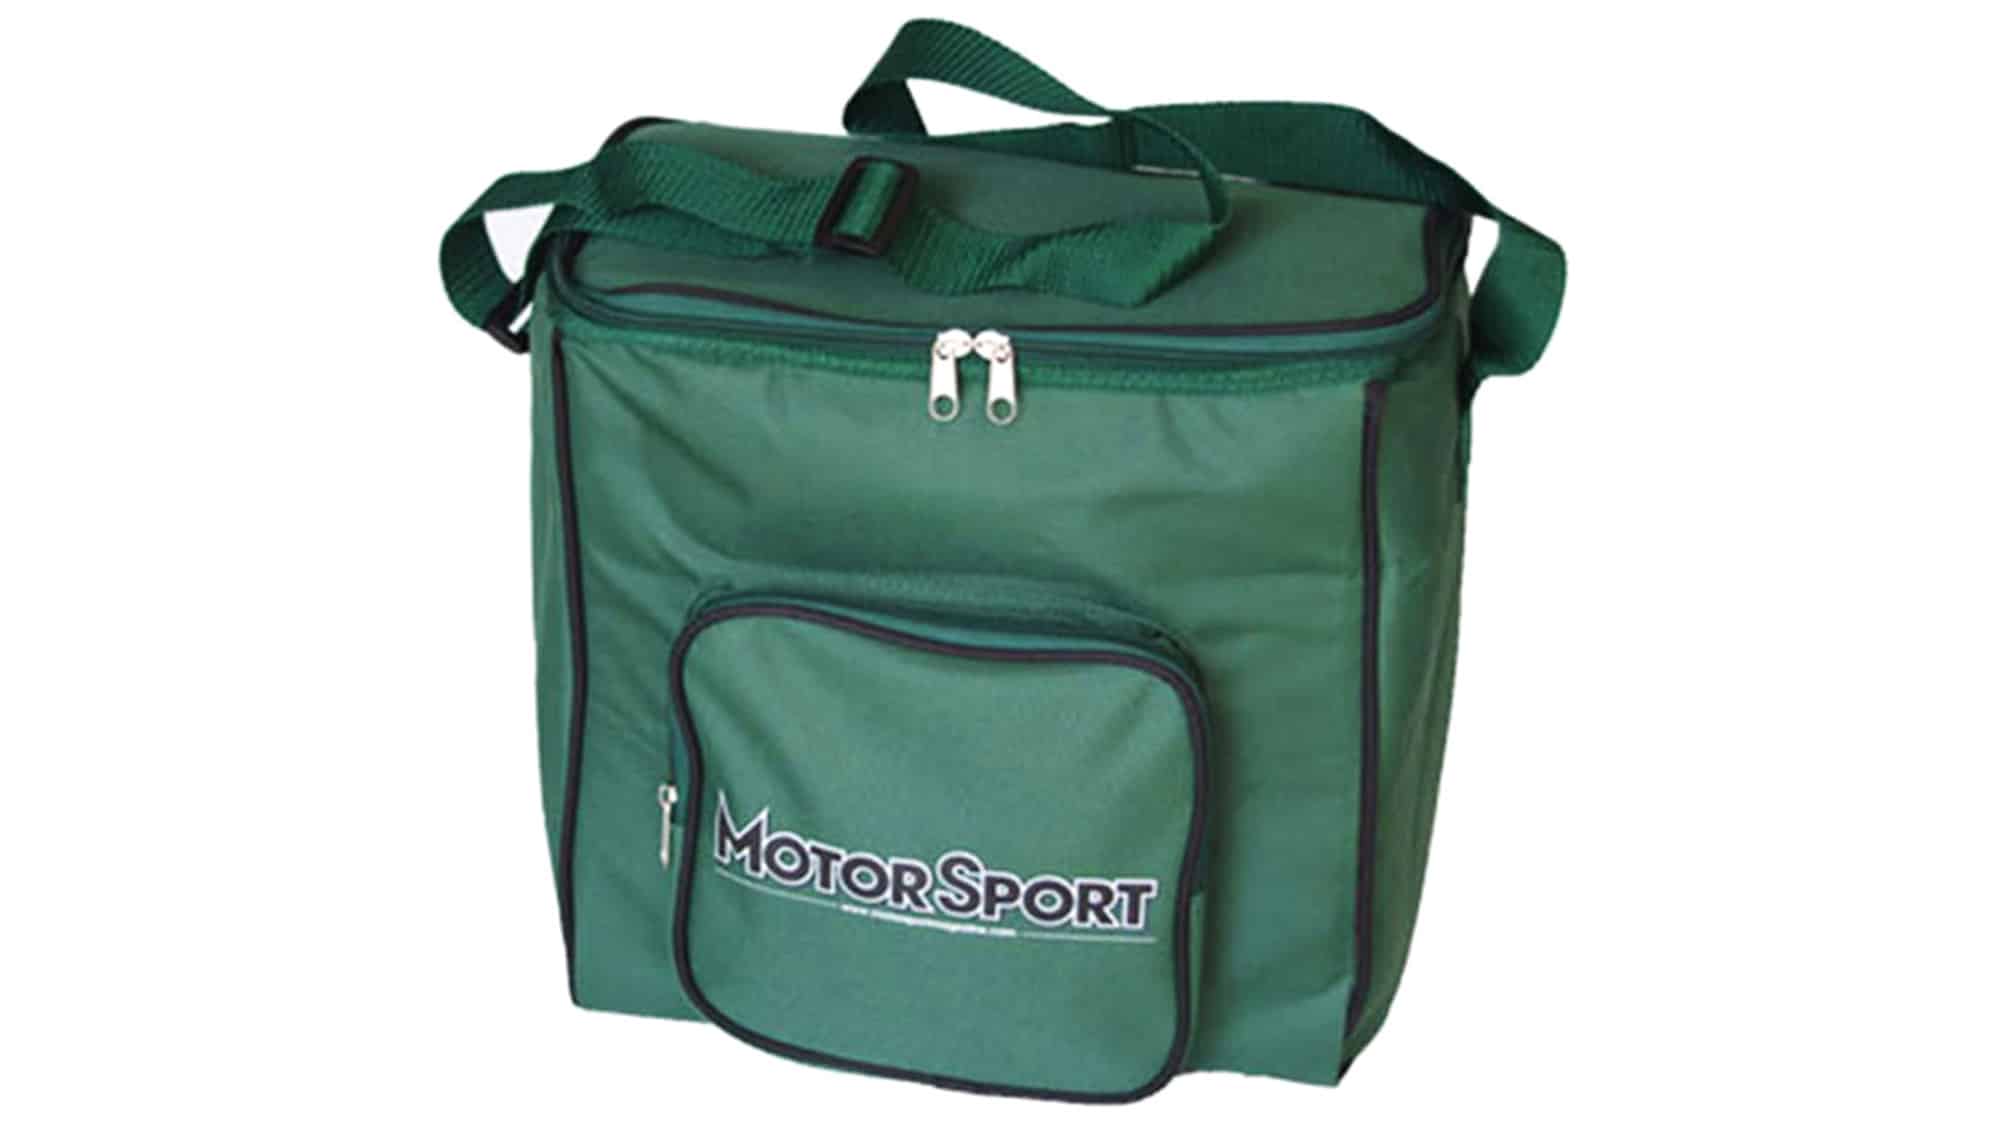 Motor Sport cool bag